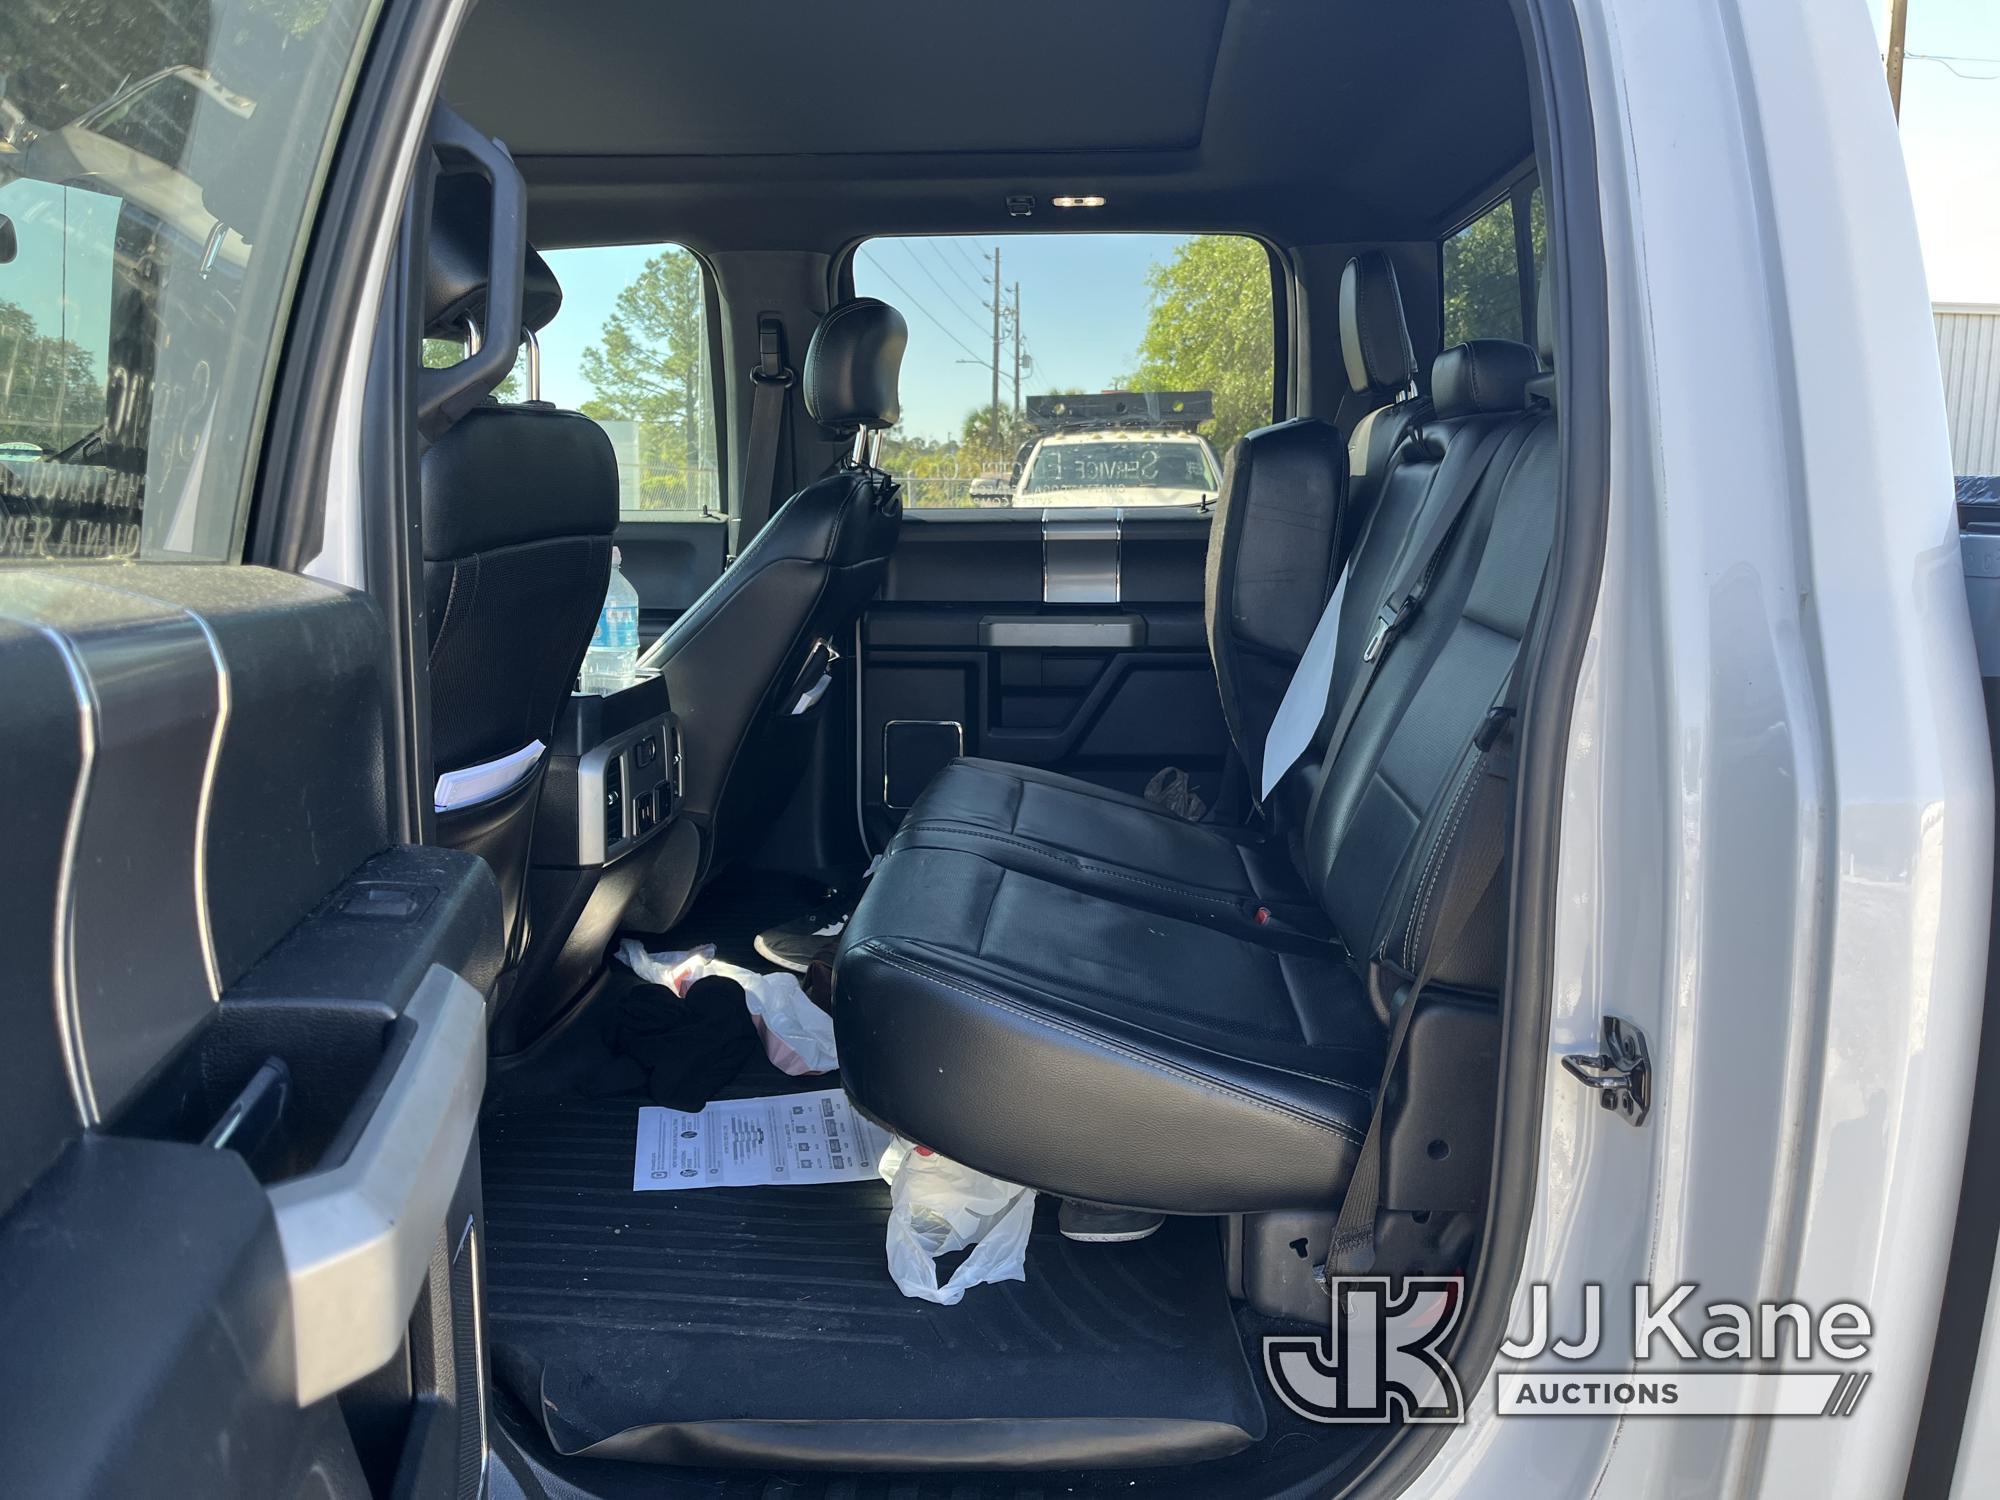 (Leesburg, FL) 2017 Ford F150 4x4 Crew-Cab Pickup Truck Runs & Moves